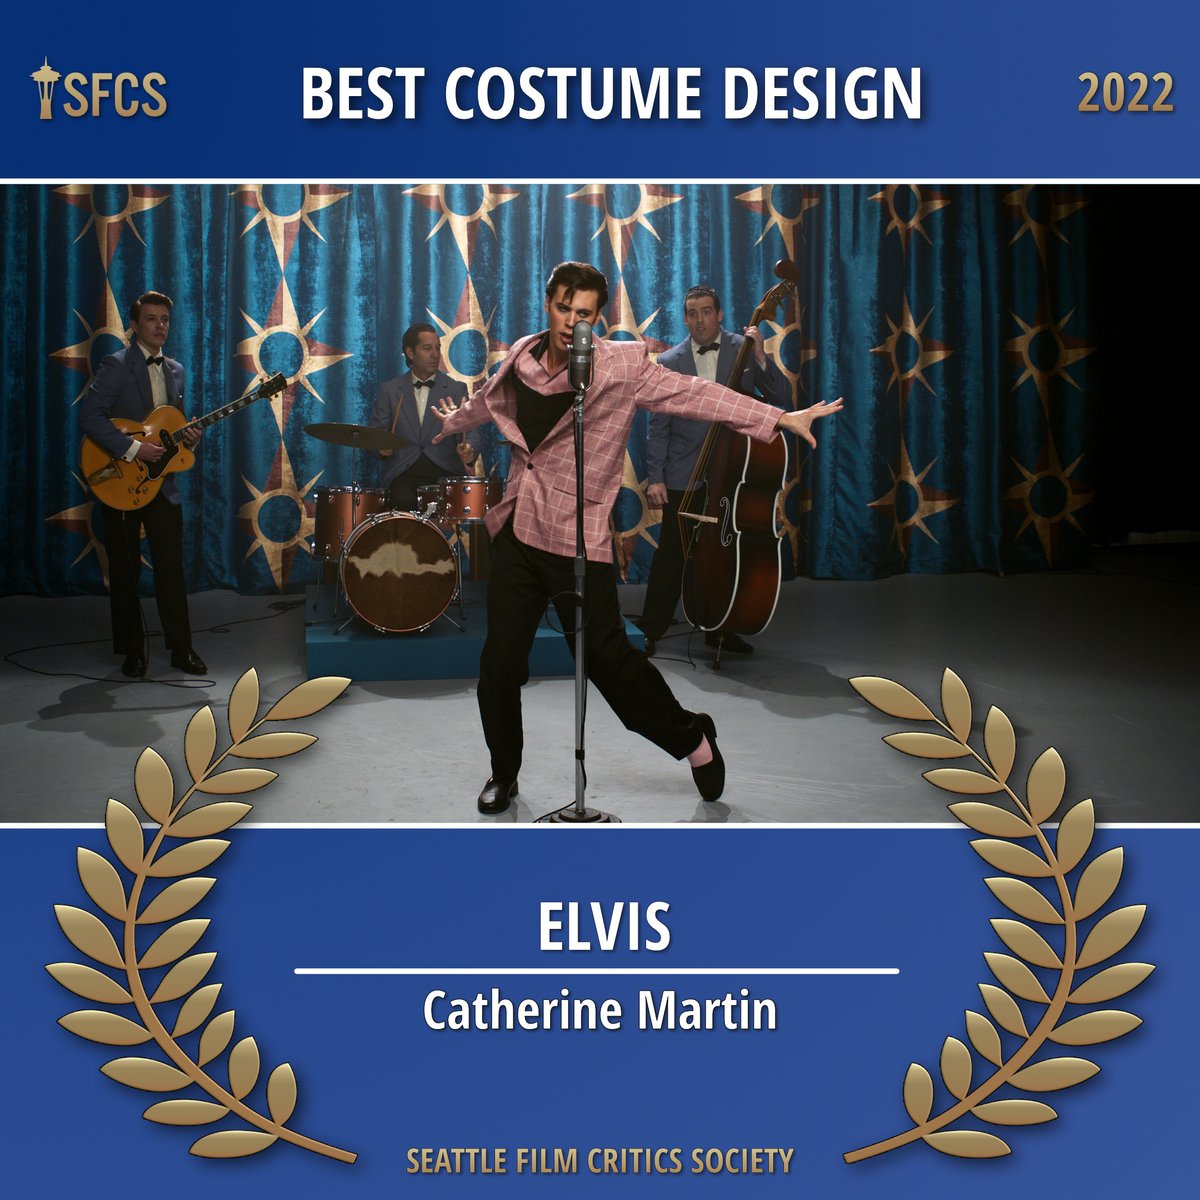 The @SeattleCritics 2022 award for BEST COSTUME DESIGN:

** ELVIS **
Catherine Martin

@ElvisMovie (@WarnerBros)
#SFCS #SFCSAwards2022 #BestCostumeDesign